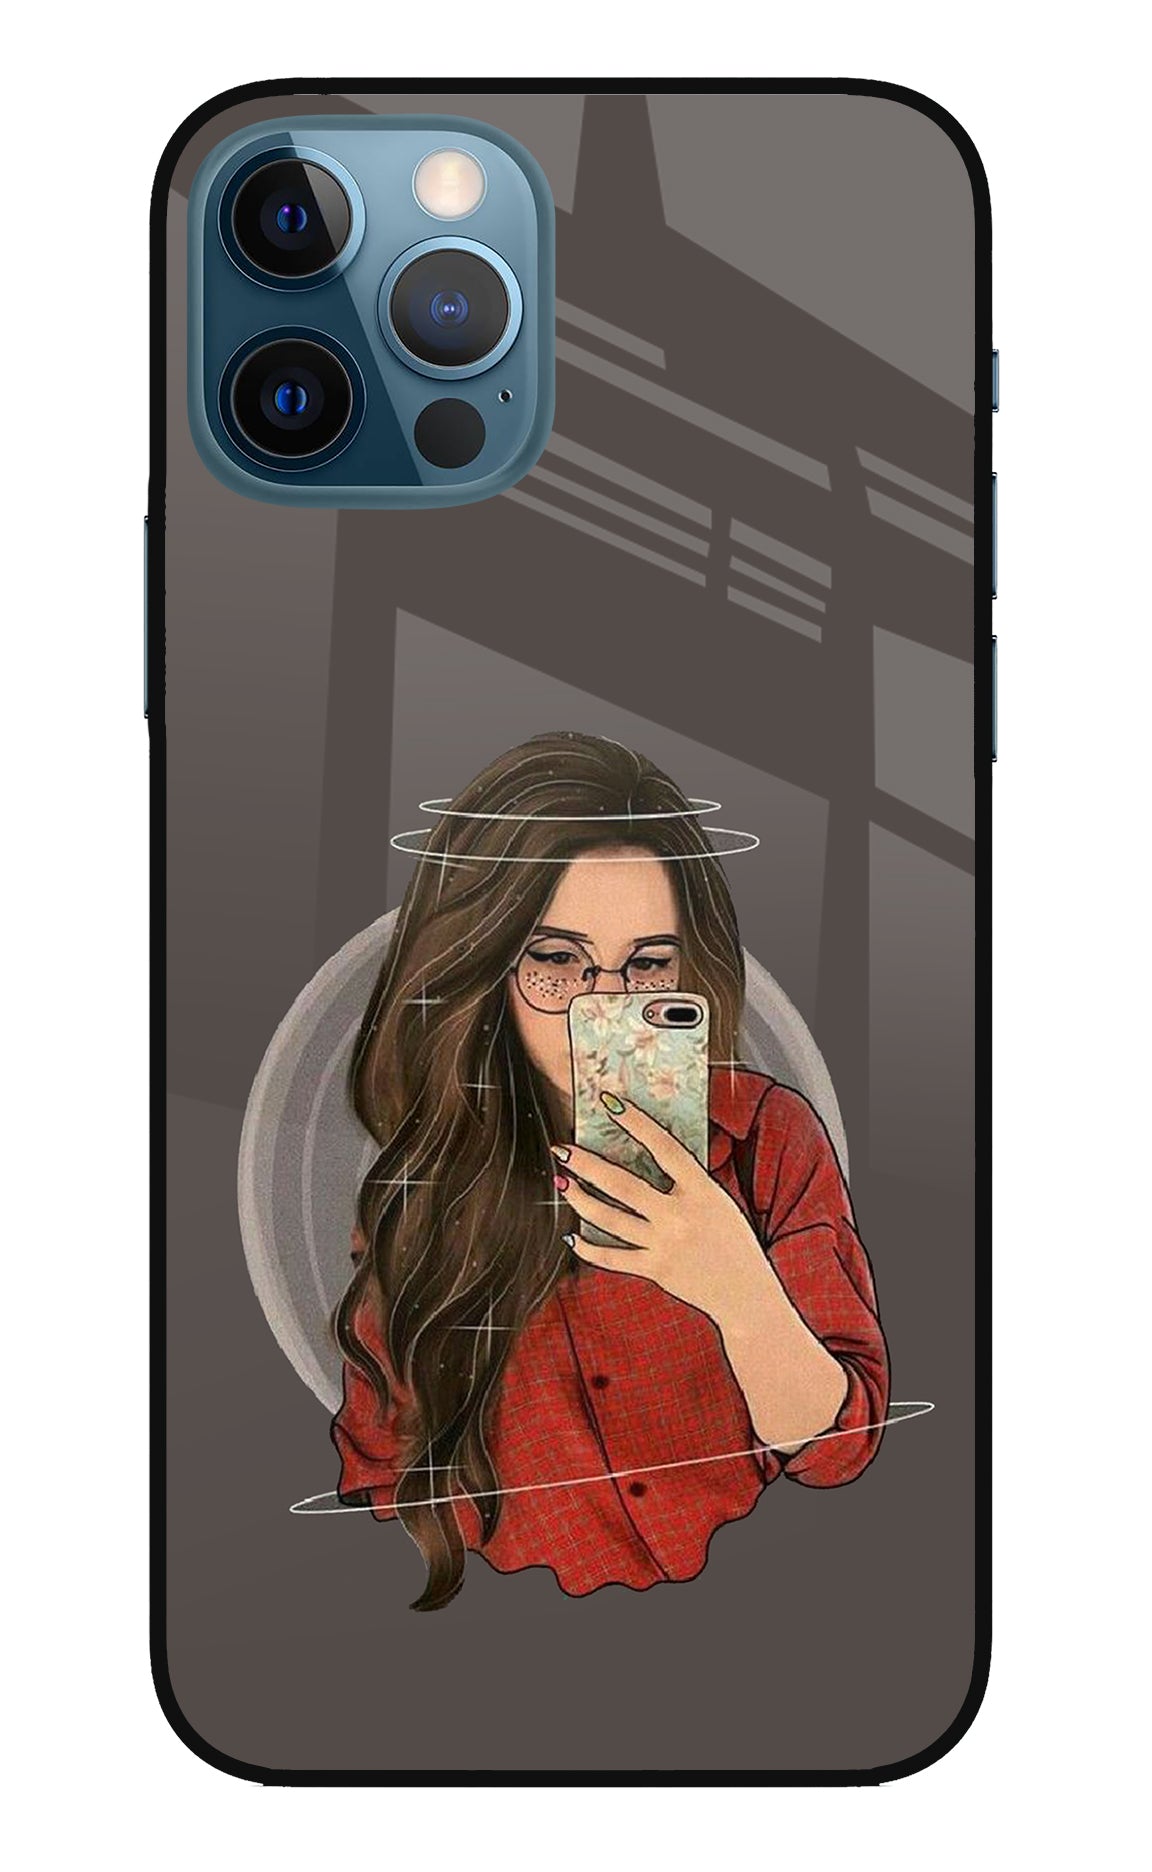 Selfie Queen iPhone 12 Pro Back Cover